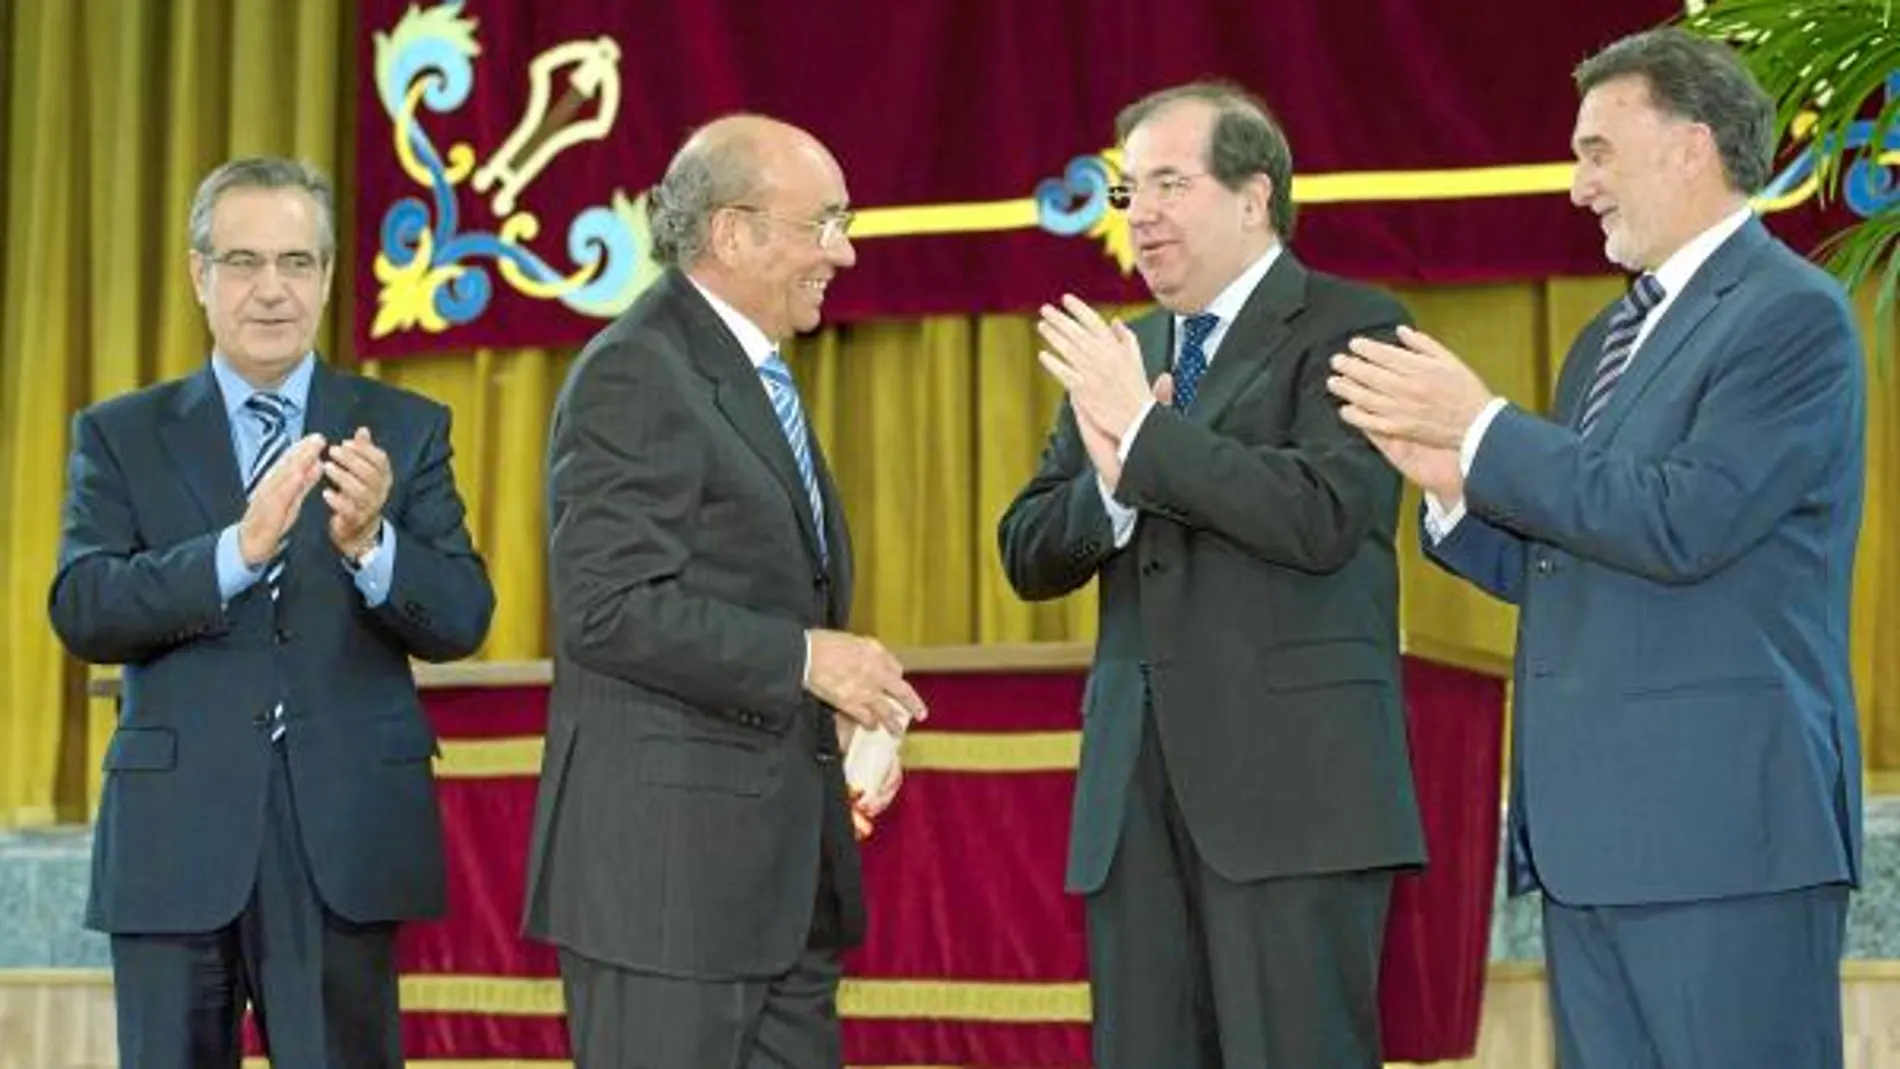 El presidente Juan Vicente Herrera, Miguel Alejo y Celestino Corbacho entregan la Medalla de Oro al Mérito de Trabajo a José Antolín Toledano